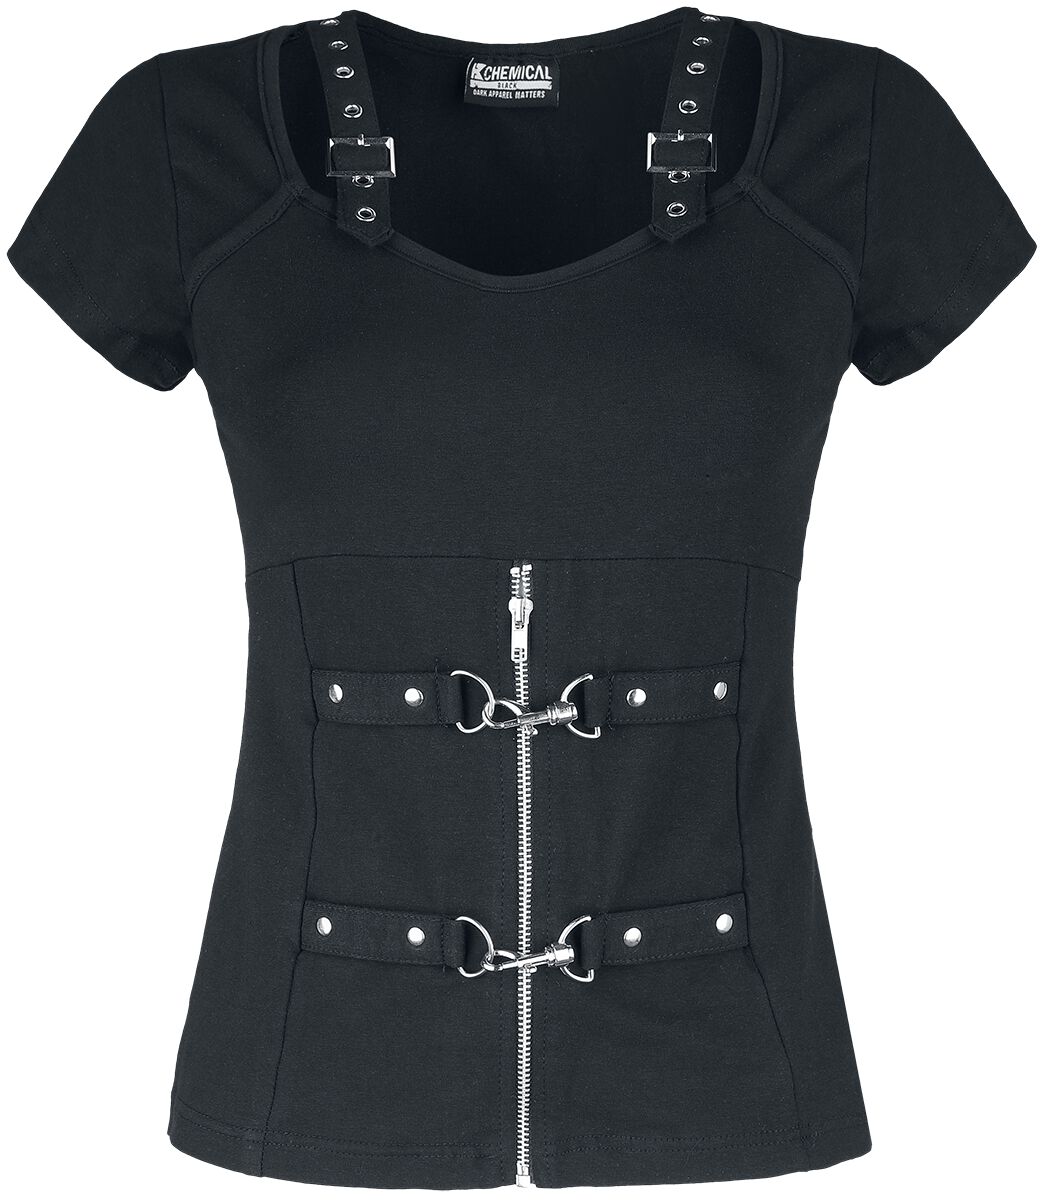 Chemical Black - Gothic T-Shirt - Maniacal Top - XS bis XXL - für Damen - Größe L - schwarz